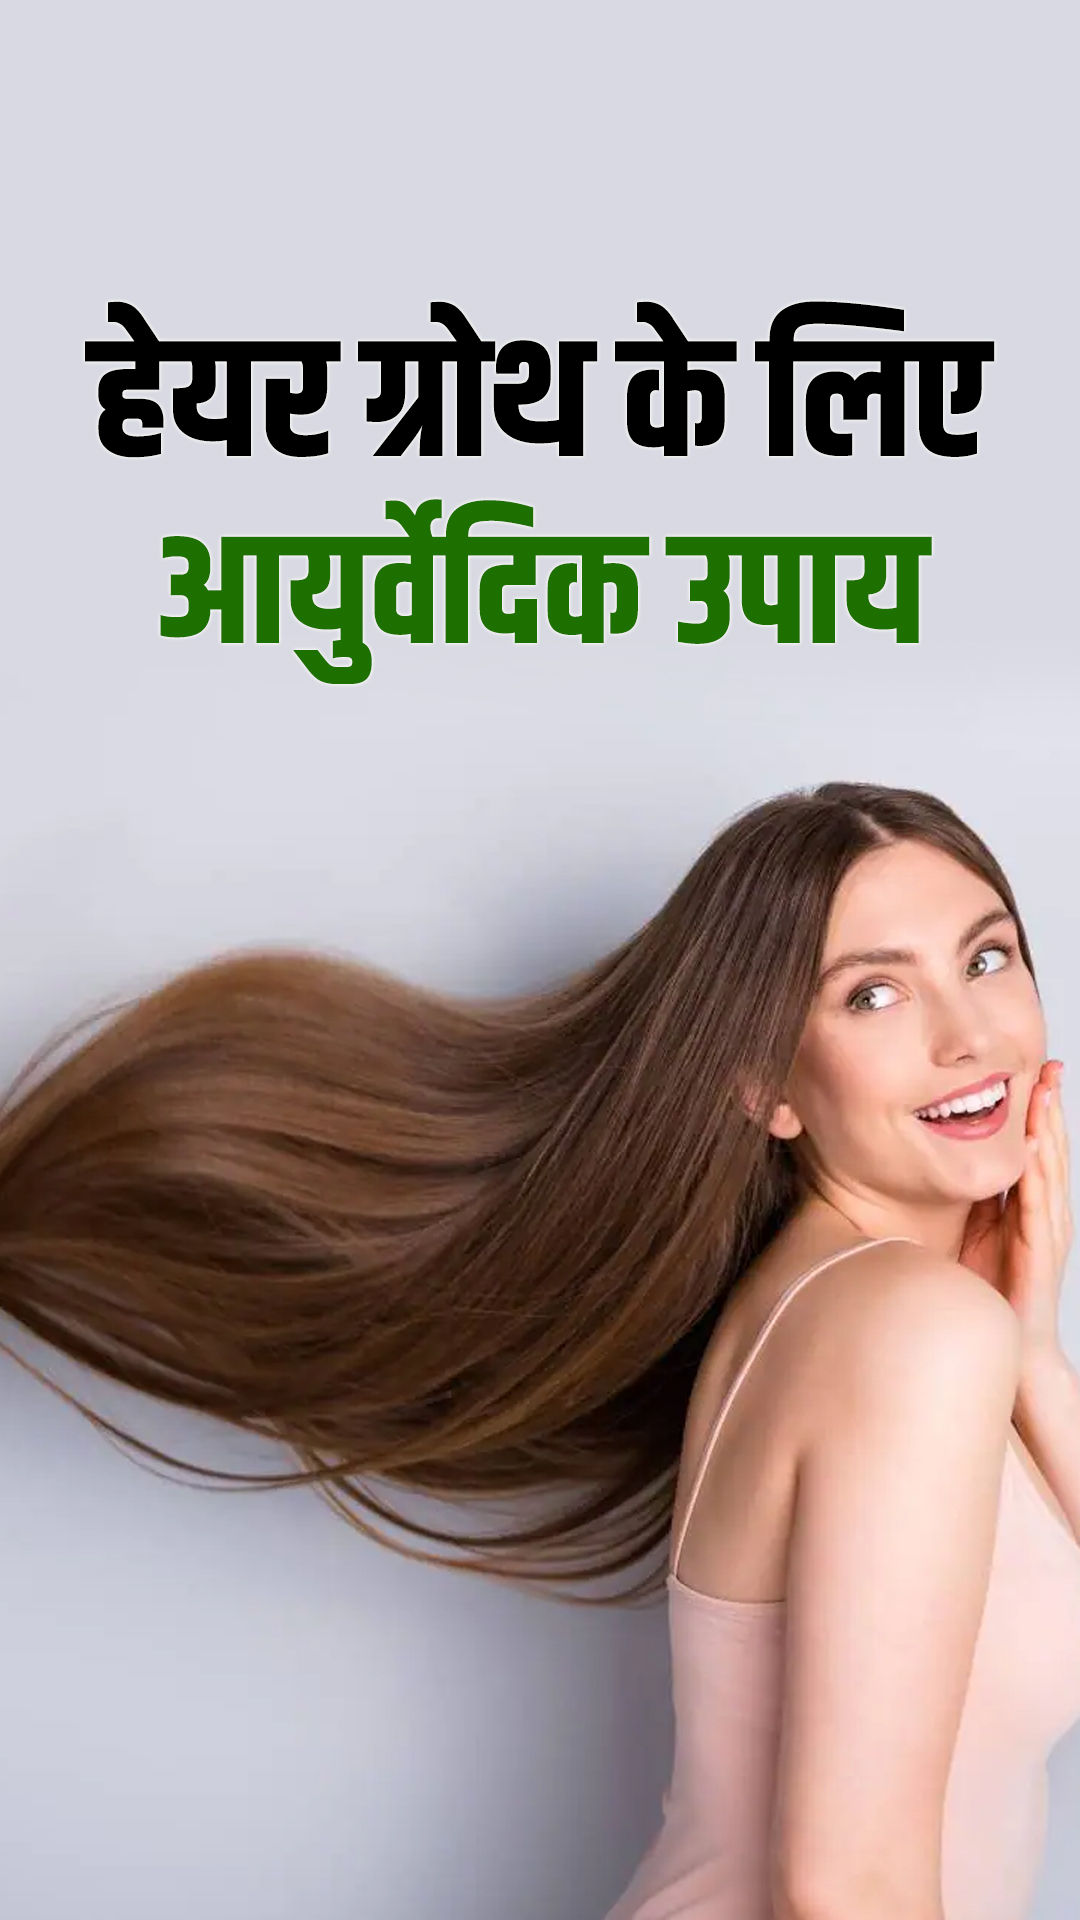 Ayurvedic herbal remedies for hair growth at home in easy way/ हेयर ग्रोथ  के लिए आयुर्वेदिक जड़ी-बूटियों वाले उपाय आएंगे - India TV Hindi